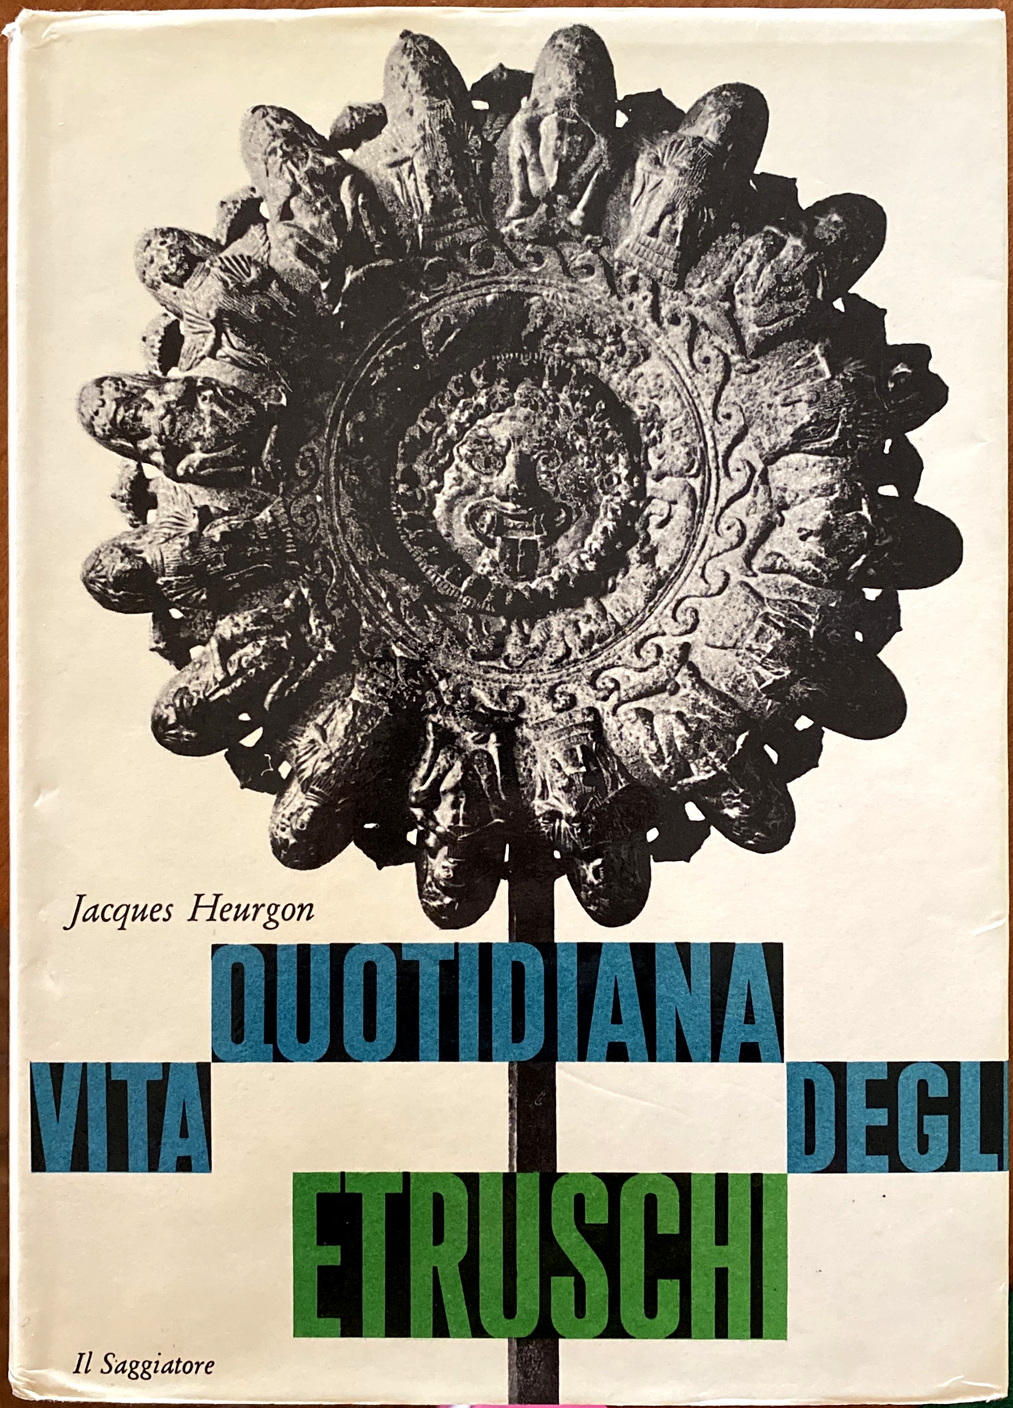 Jacques Heurgon, Vita quotidiana degli Etruschi, Ed. il Saggiatore, 1967